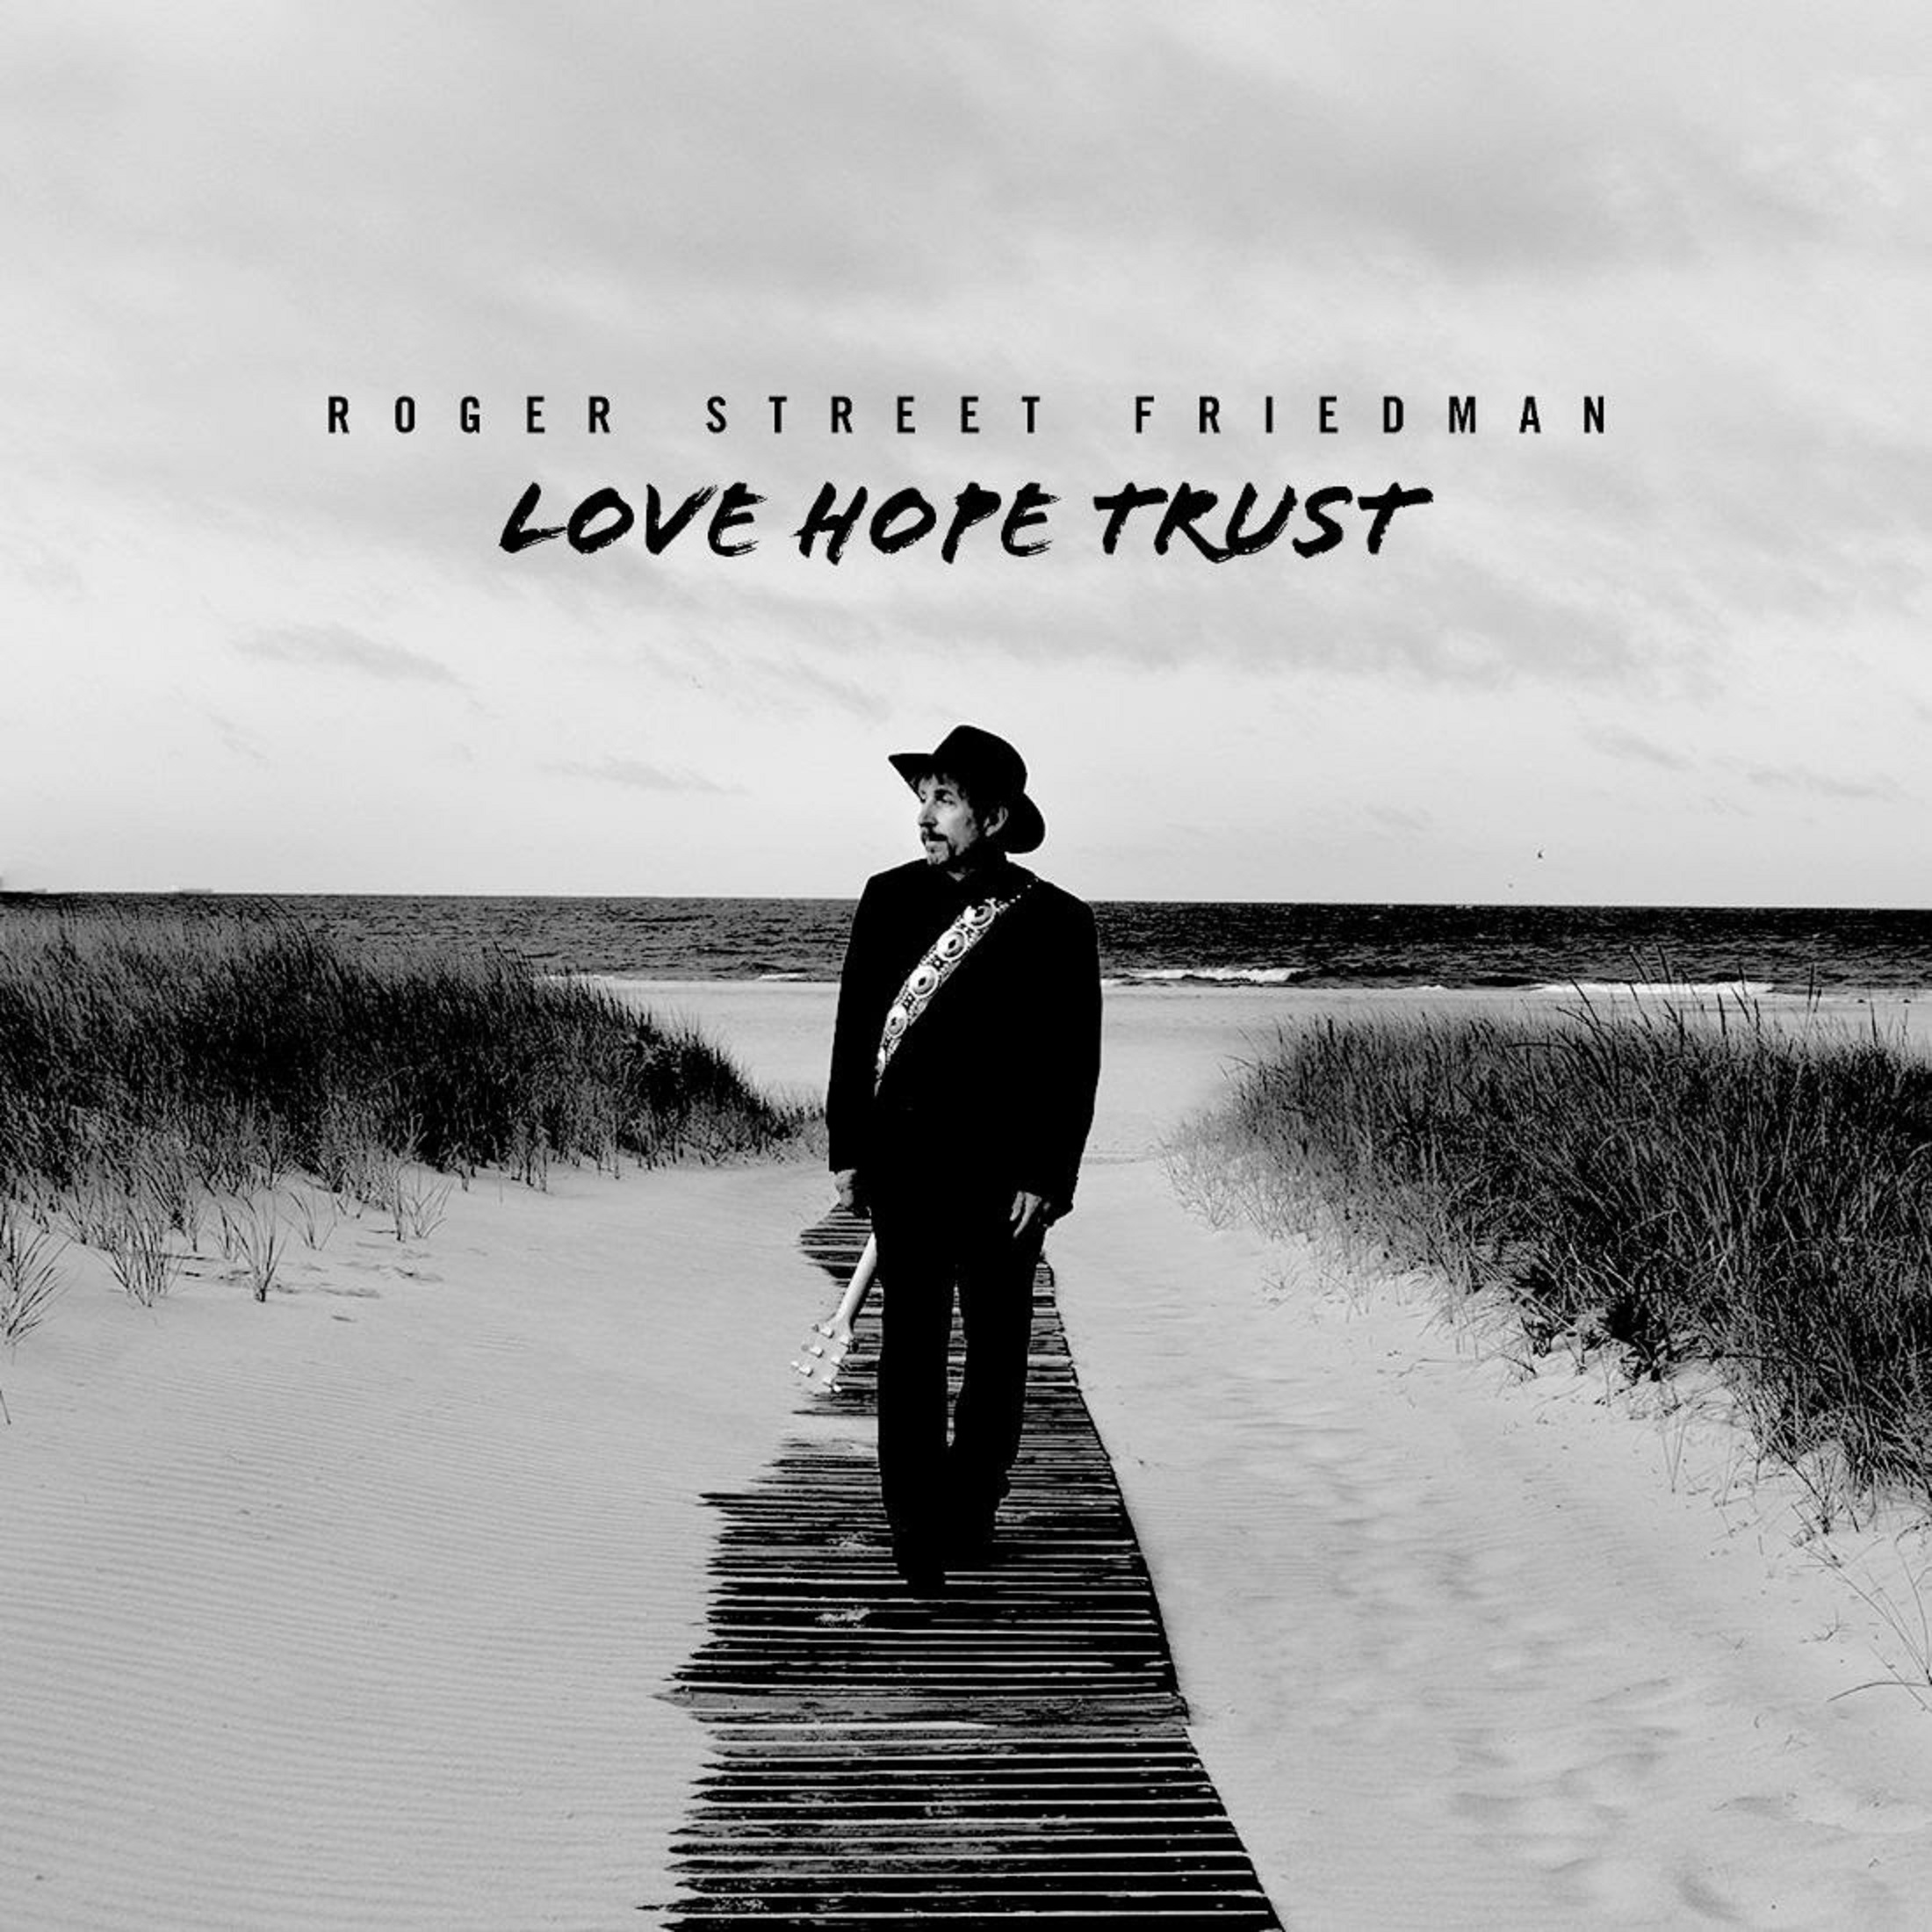  Americana singer-songwriter Roger Street Friedman Announces ‘Love Hope Trust,’ Out November 4th